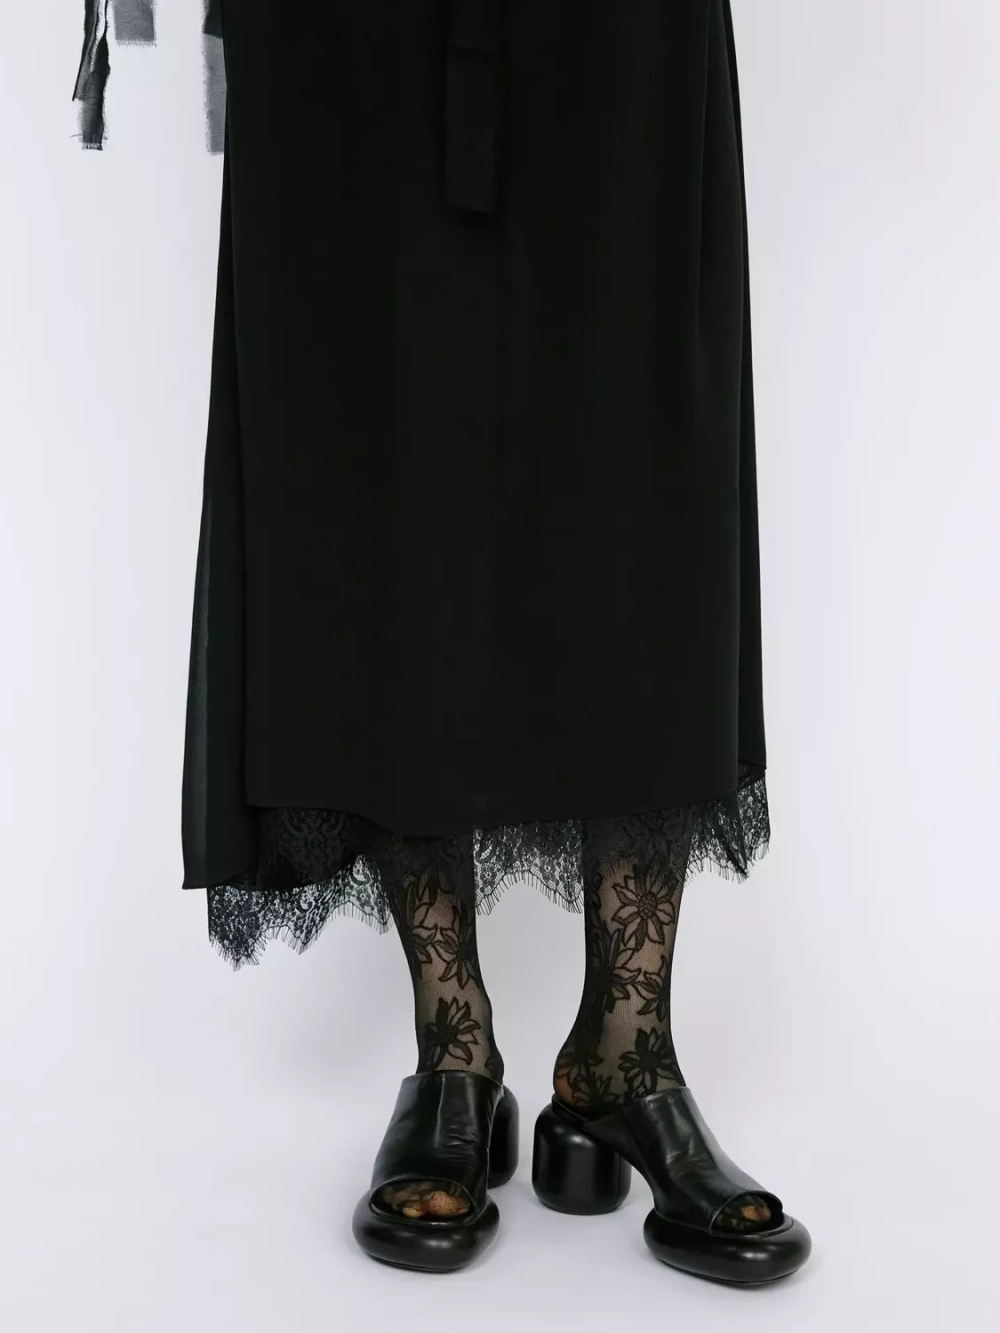 Платье черное из шифона со съемными рукавами OLA OLA